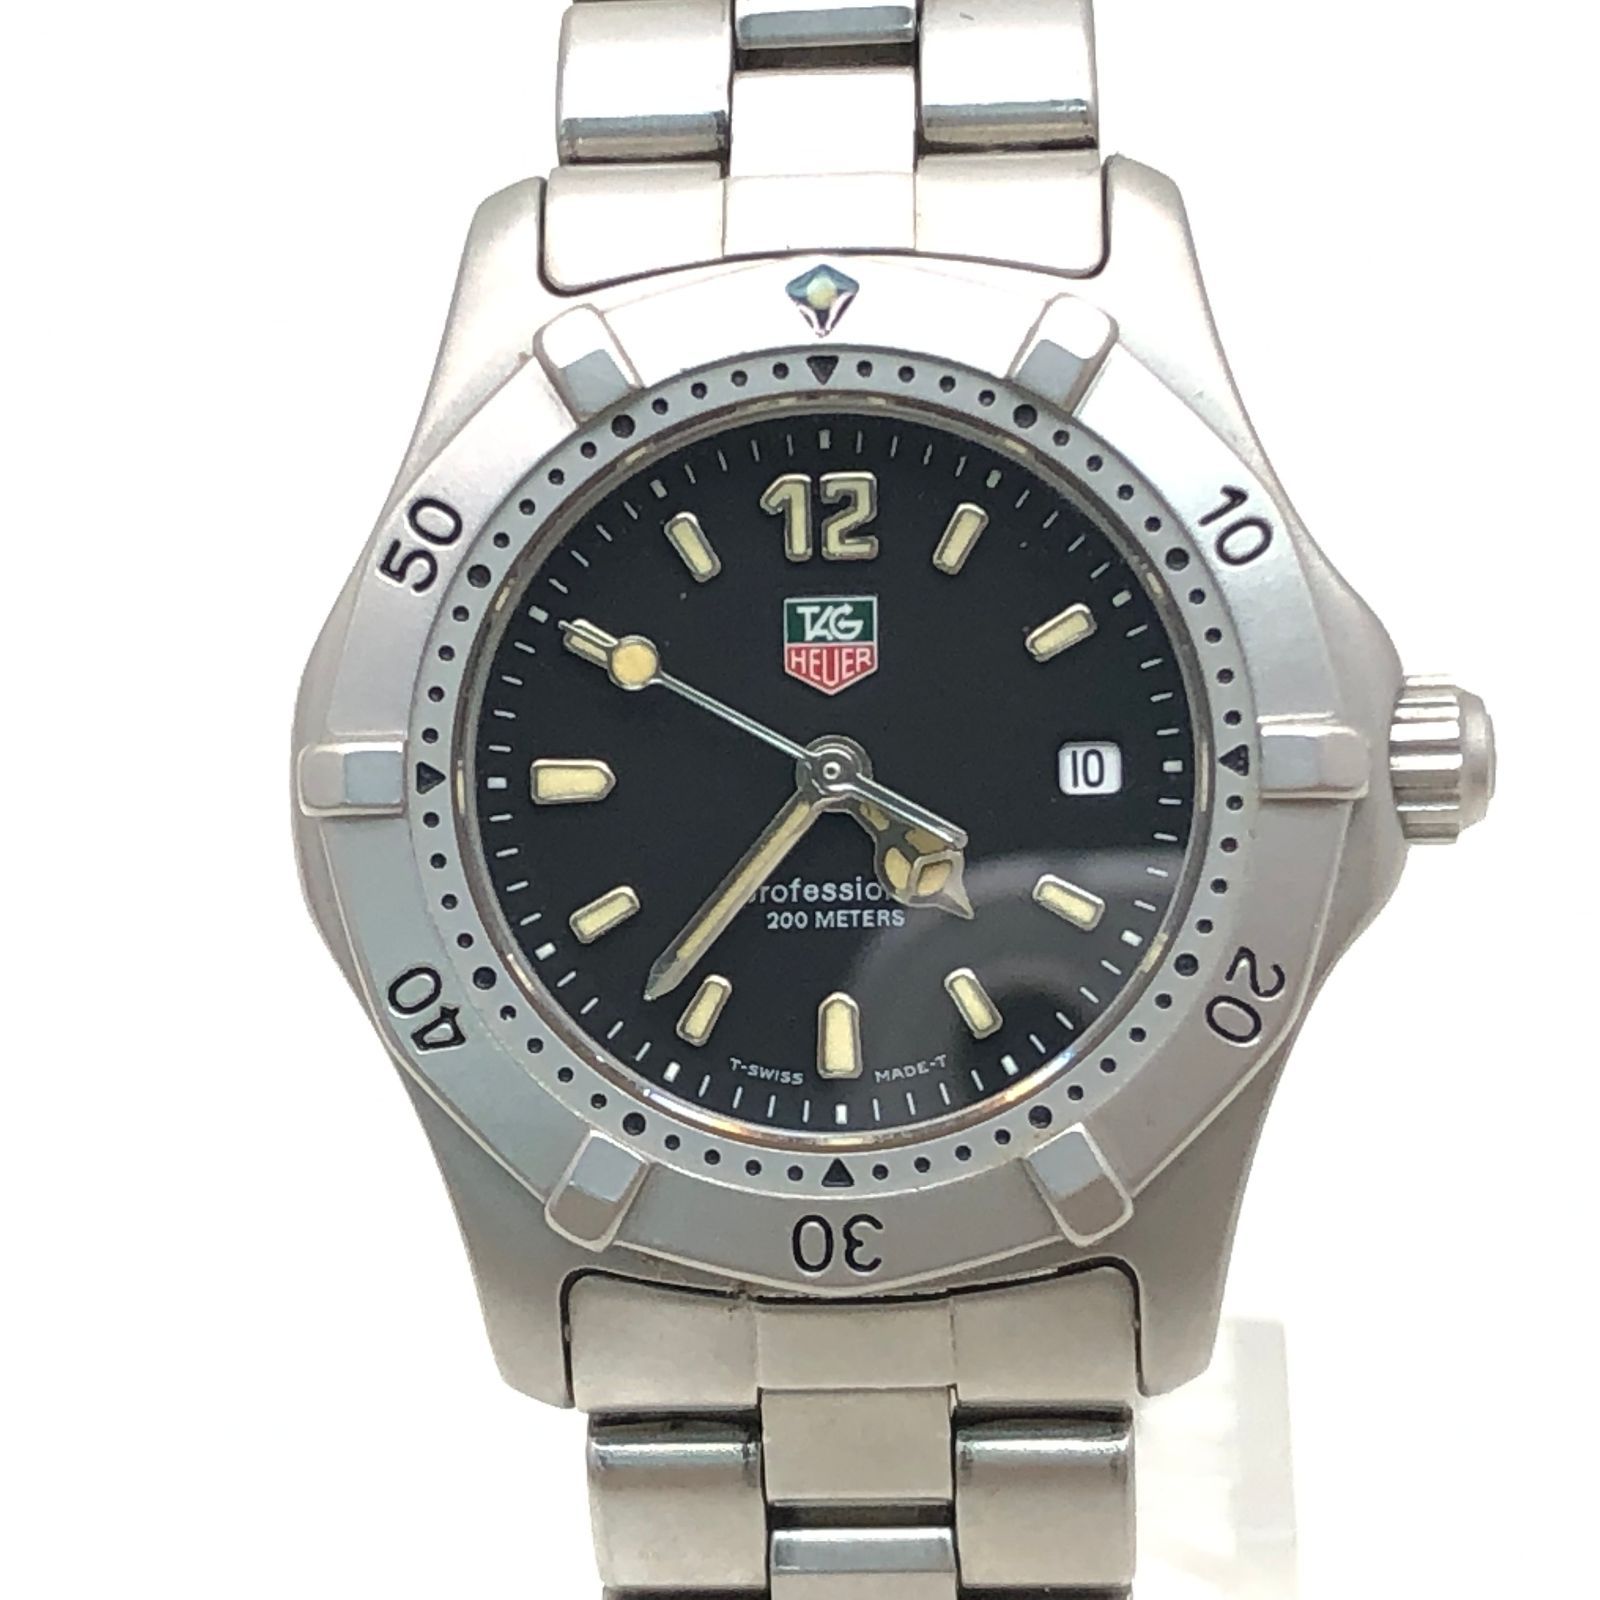 タグホイヤー 2000シリーズ プロフェッショナル 腕時計 1-829